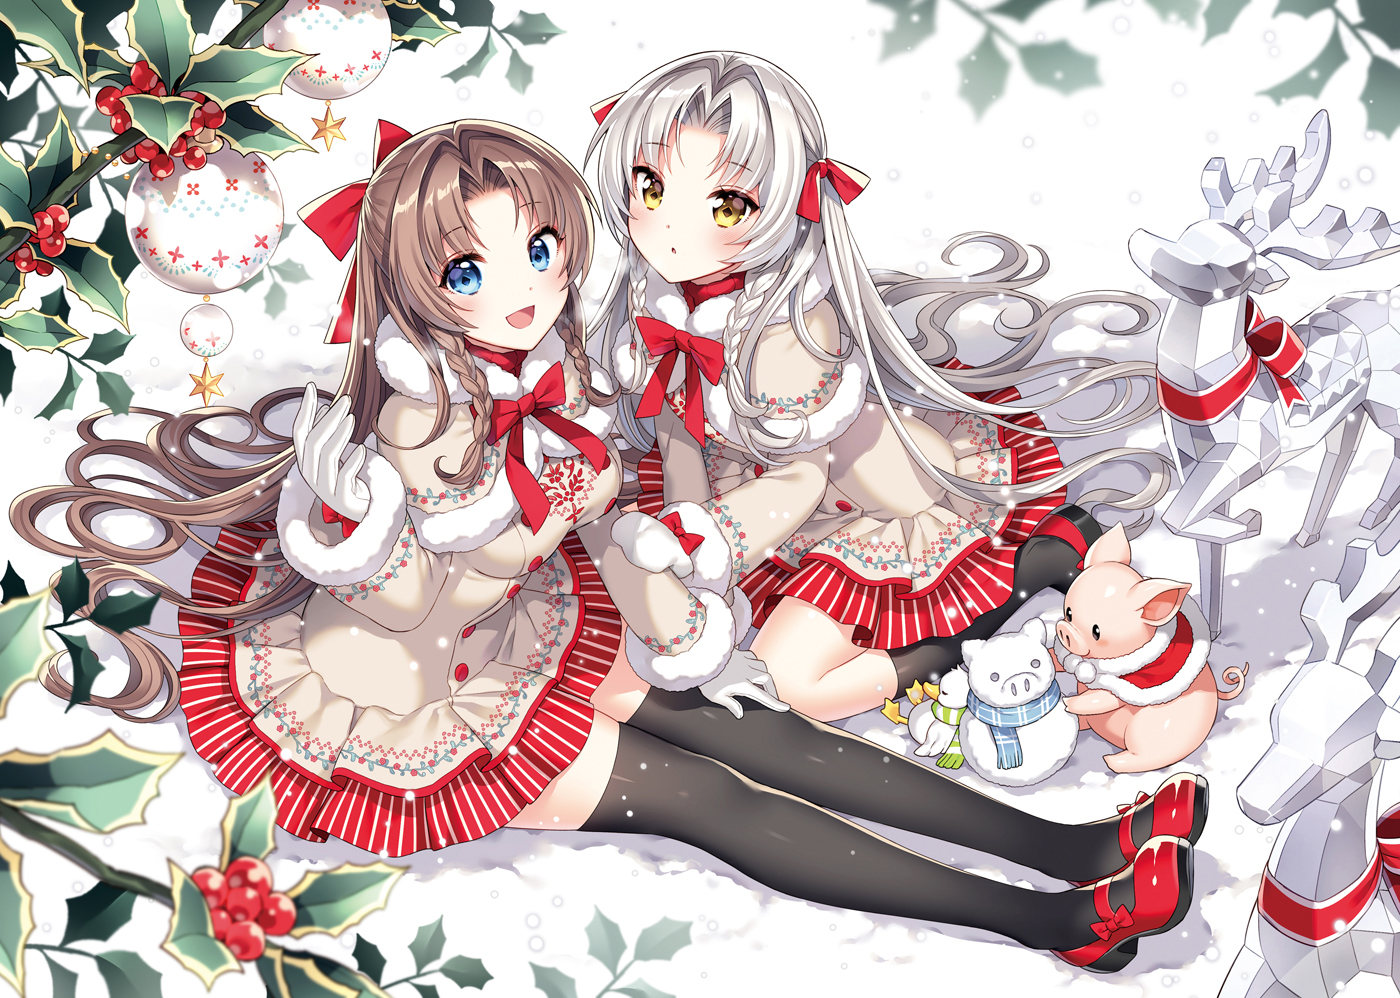 Anime 1400x998 Nardack artwork anime girls brunette silver hair thigh-highs winter snow